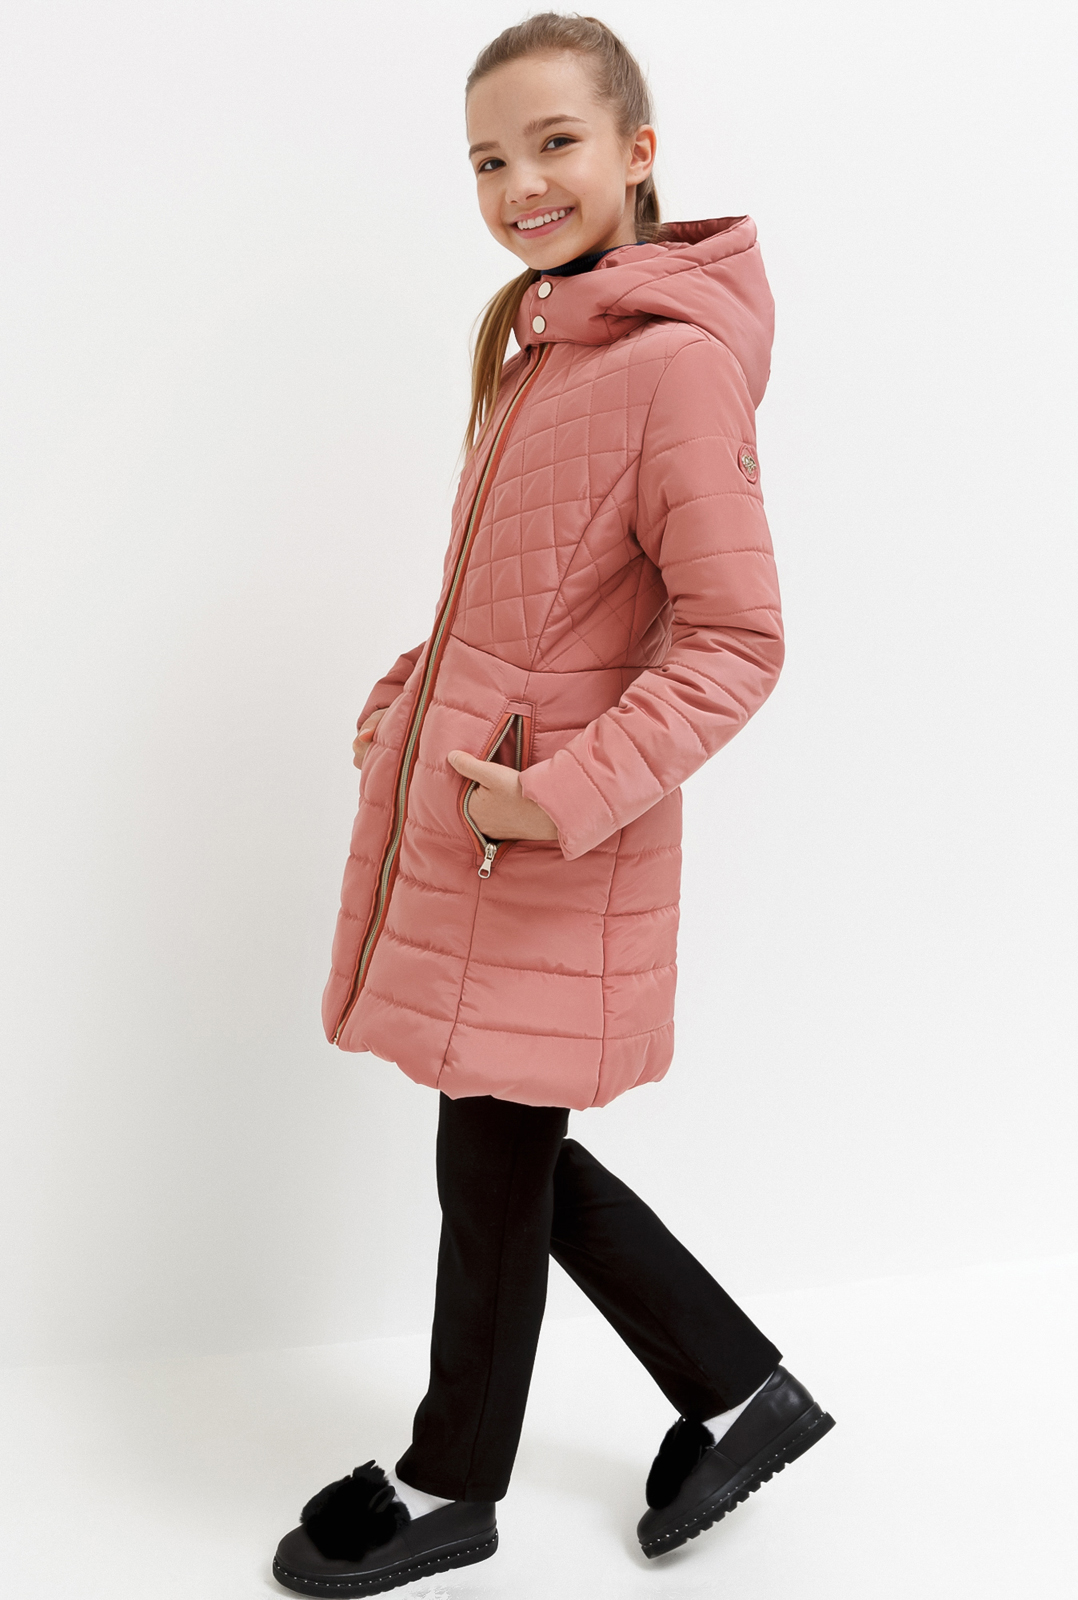 Пальто для девочки Acoola Zimia, цвет: светло-розовый. 20240610006_3400. Размер 164